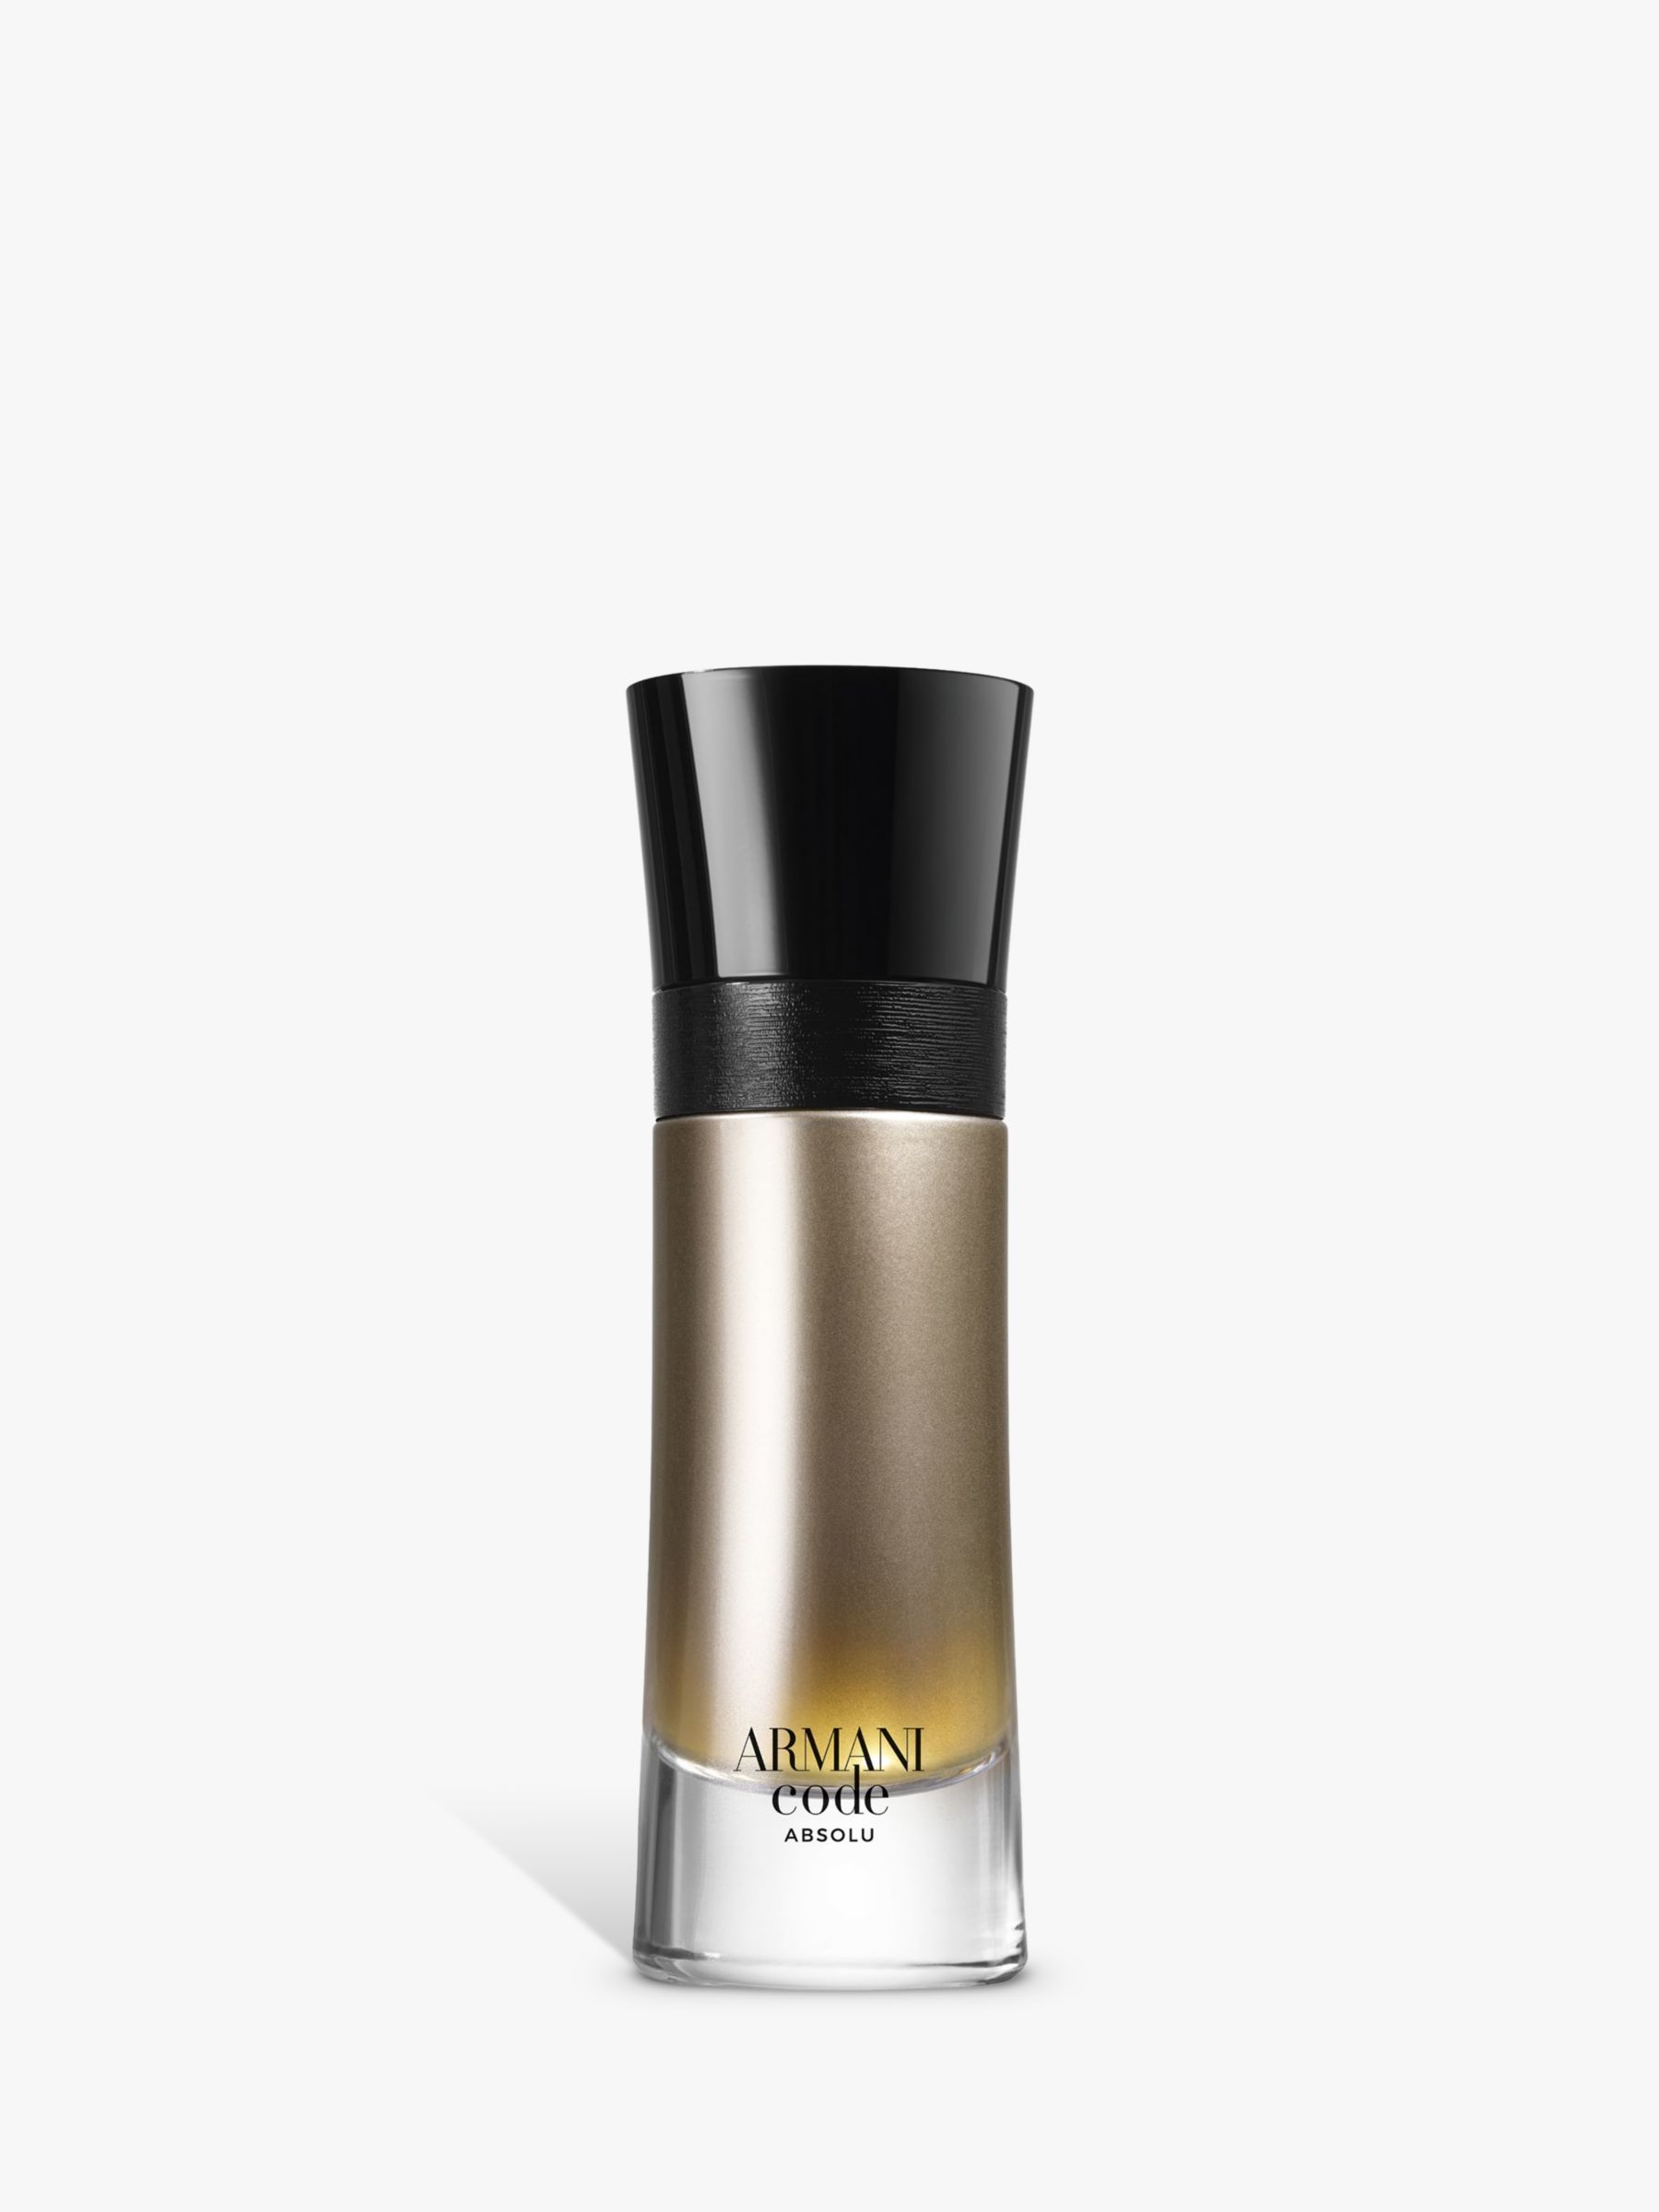 giorgio armani gold perfume